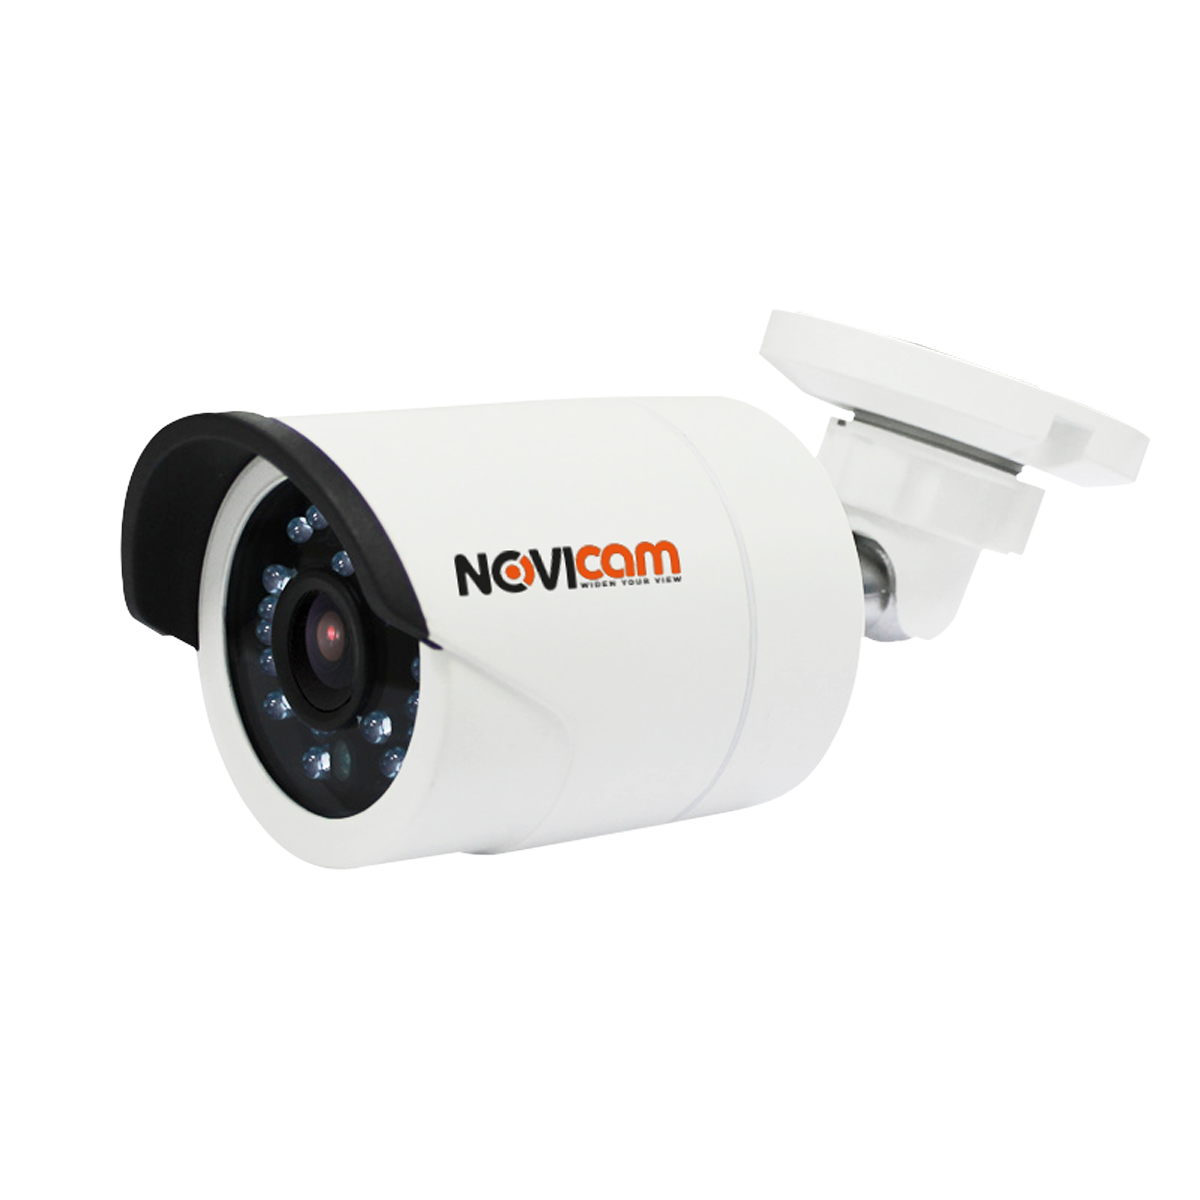 Всепогодная видеокамера NOVICAM ac13w. Видеокамера IP NOVICAM n39lwx. IP n23w NOVICAM (ver.1116) уличная всепогодная IP видеокамера. Видеокамера наружная NOVICAM Pro IP nc13wp. Регистратор novicam